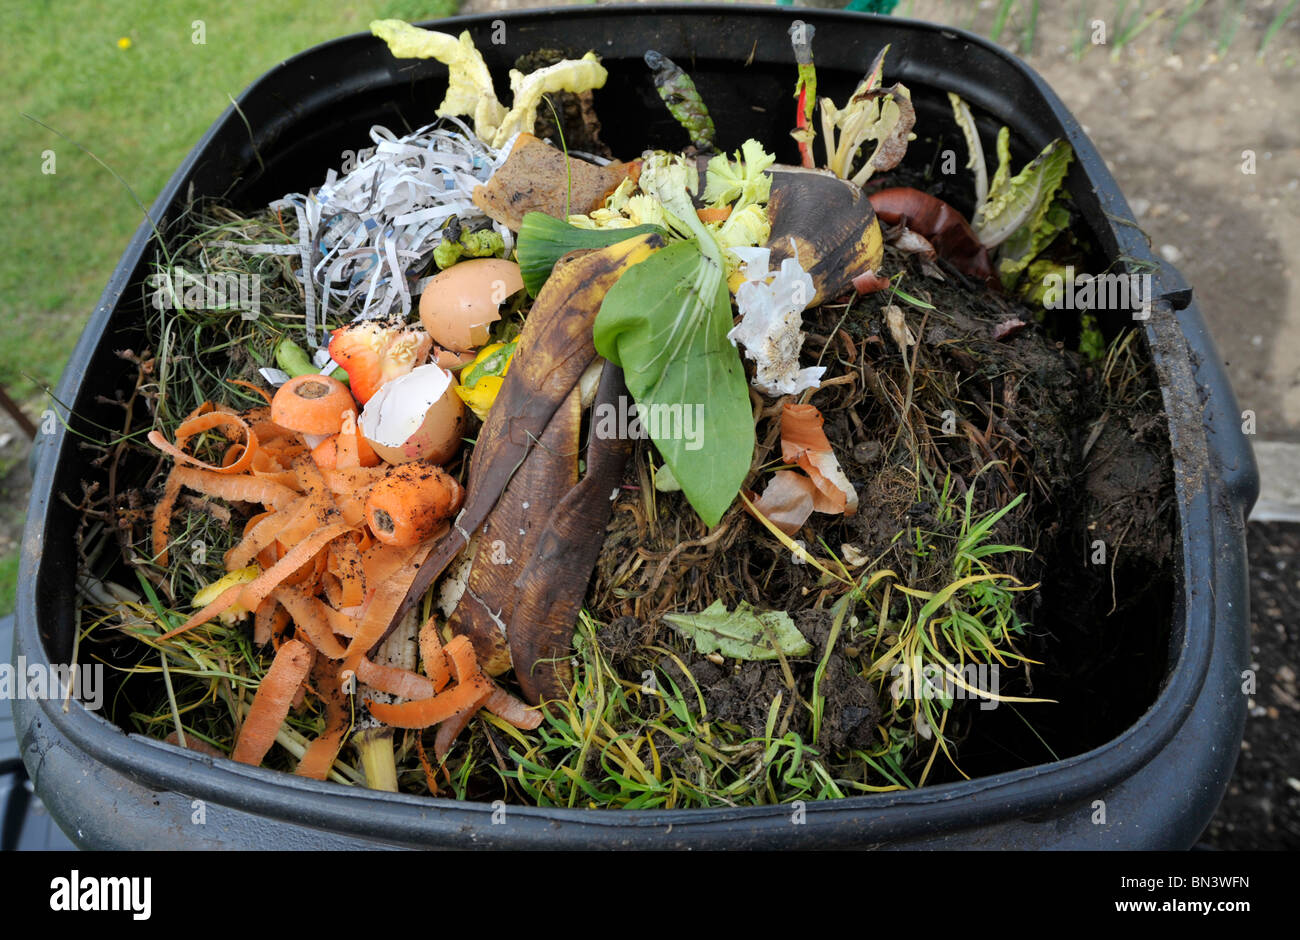 Garden composter immagini e fotografie stock ad alta risoluzione - Alamy